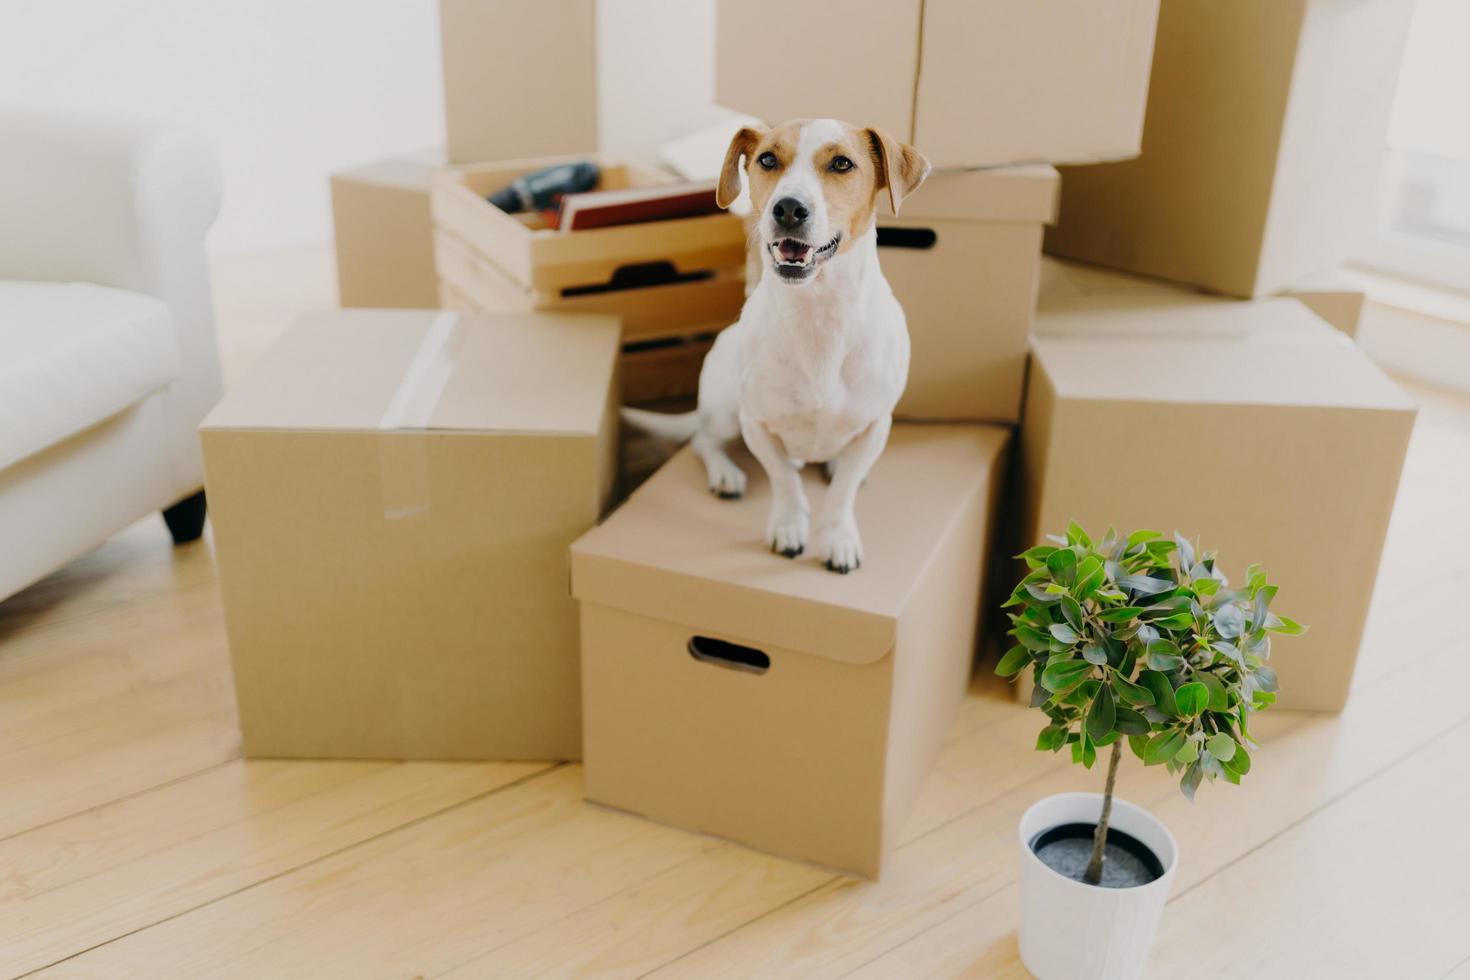 foto de un pequeño perro jack russel terrier marrón y blanco posa en cajas de cartón, planta verde en maceta cerca, se quita en una casa nueva junto con los anfitriones. concepto de animales, hipotecas e inmuebles